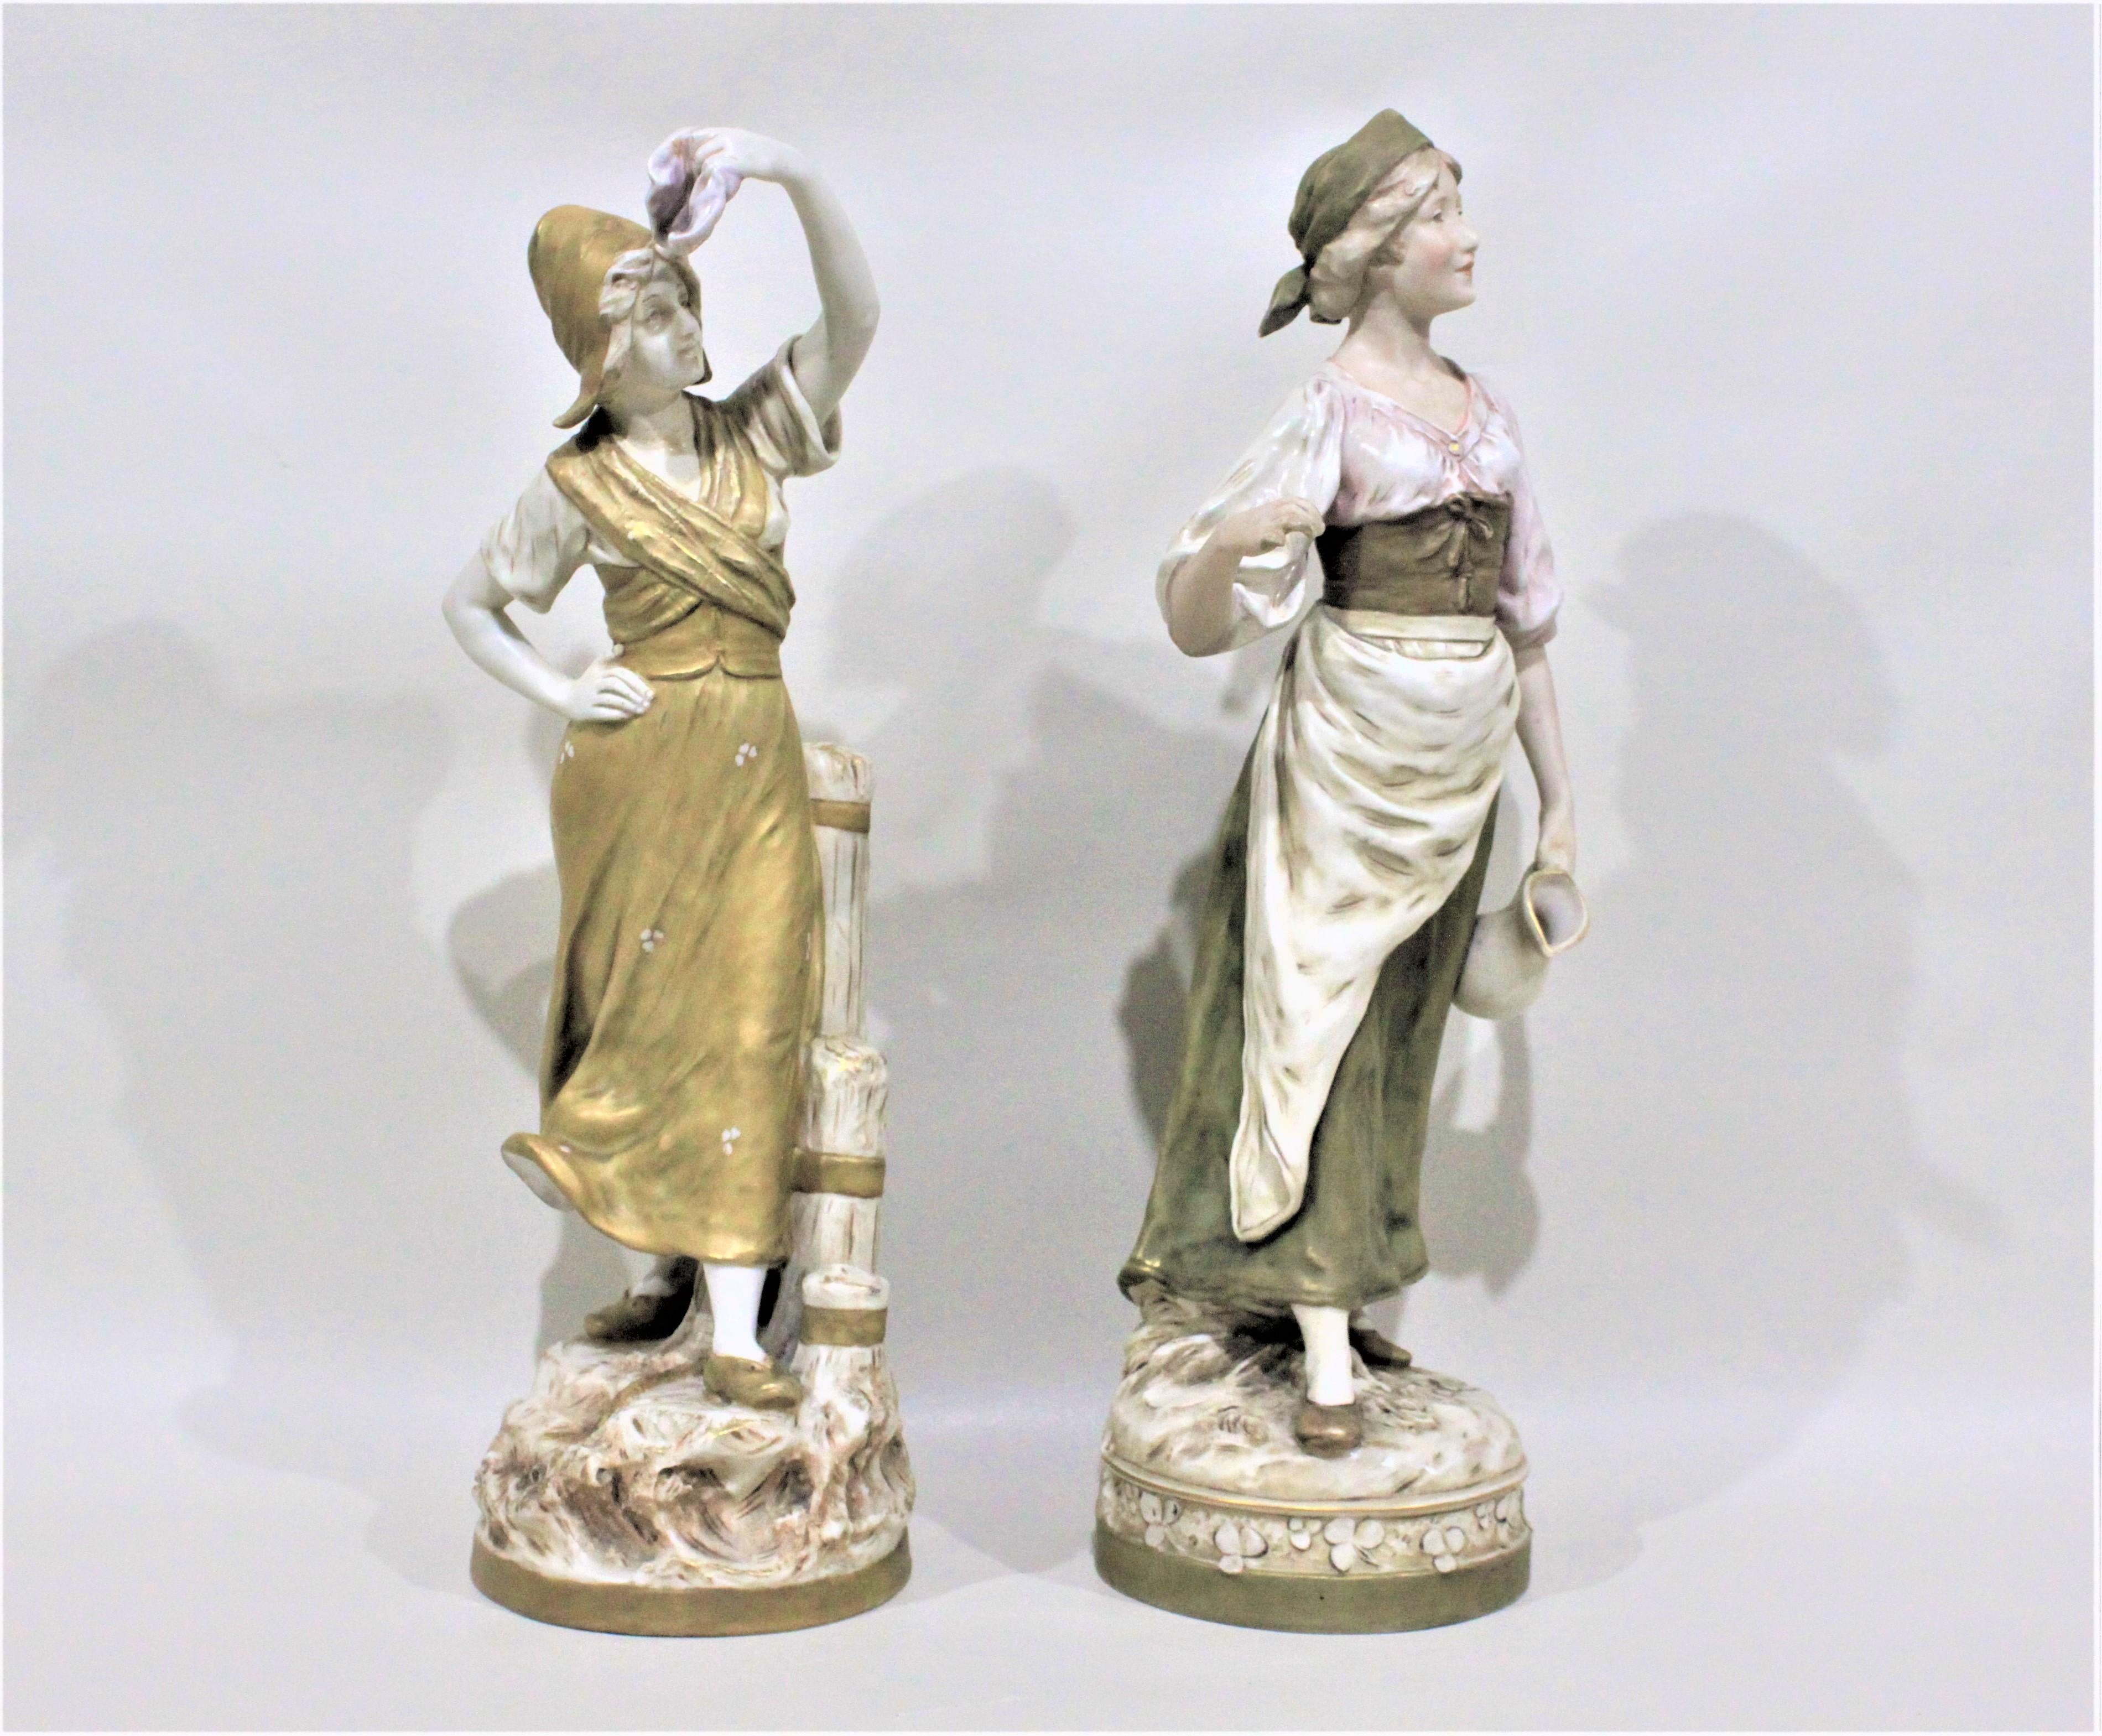 Dieses Paar Porzellanfiguren wurde um 1900 von Royal Dux in der Zeit und im Stil des Jugendstils hergestellt. Beide Figuren sind deutlich mit der frühen Royal Dux Signatur Dreieck markiert und jede steht etwa 17 Zoll in der Höhe.